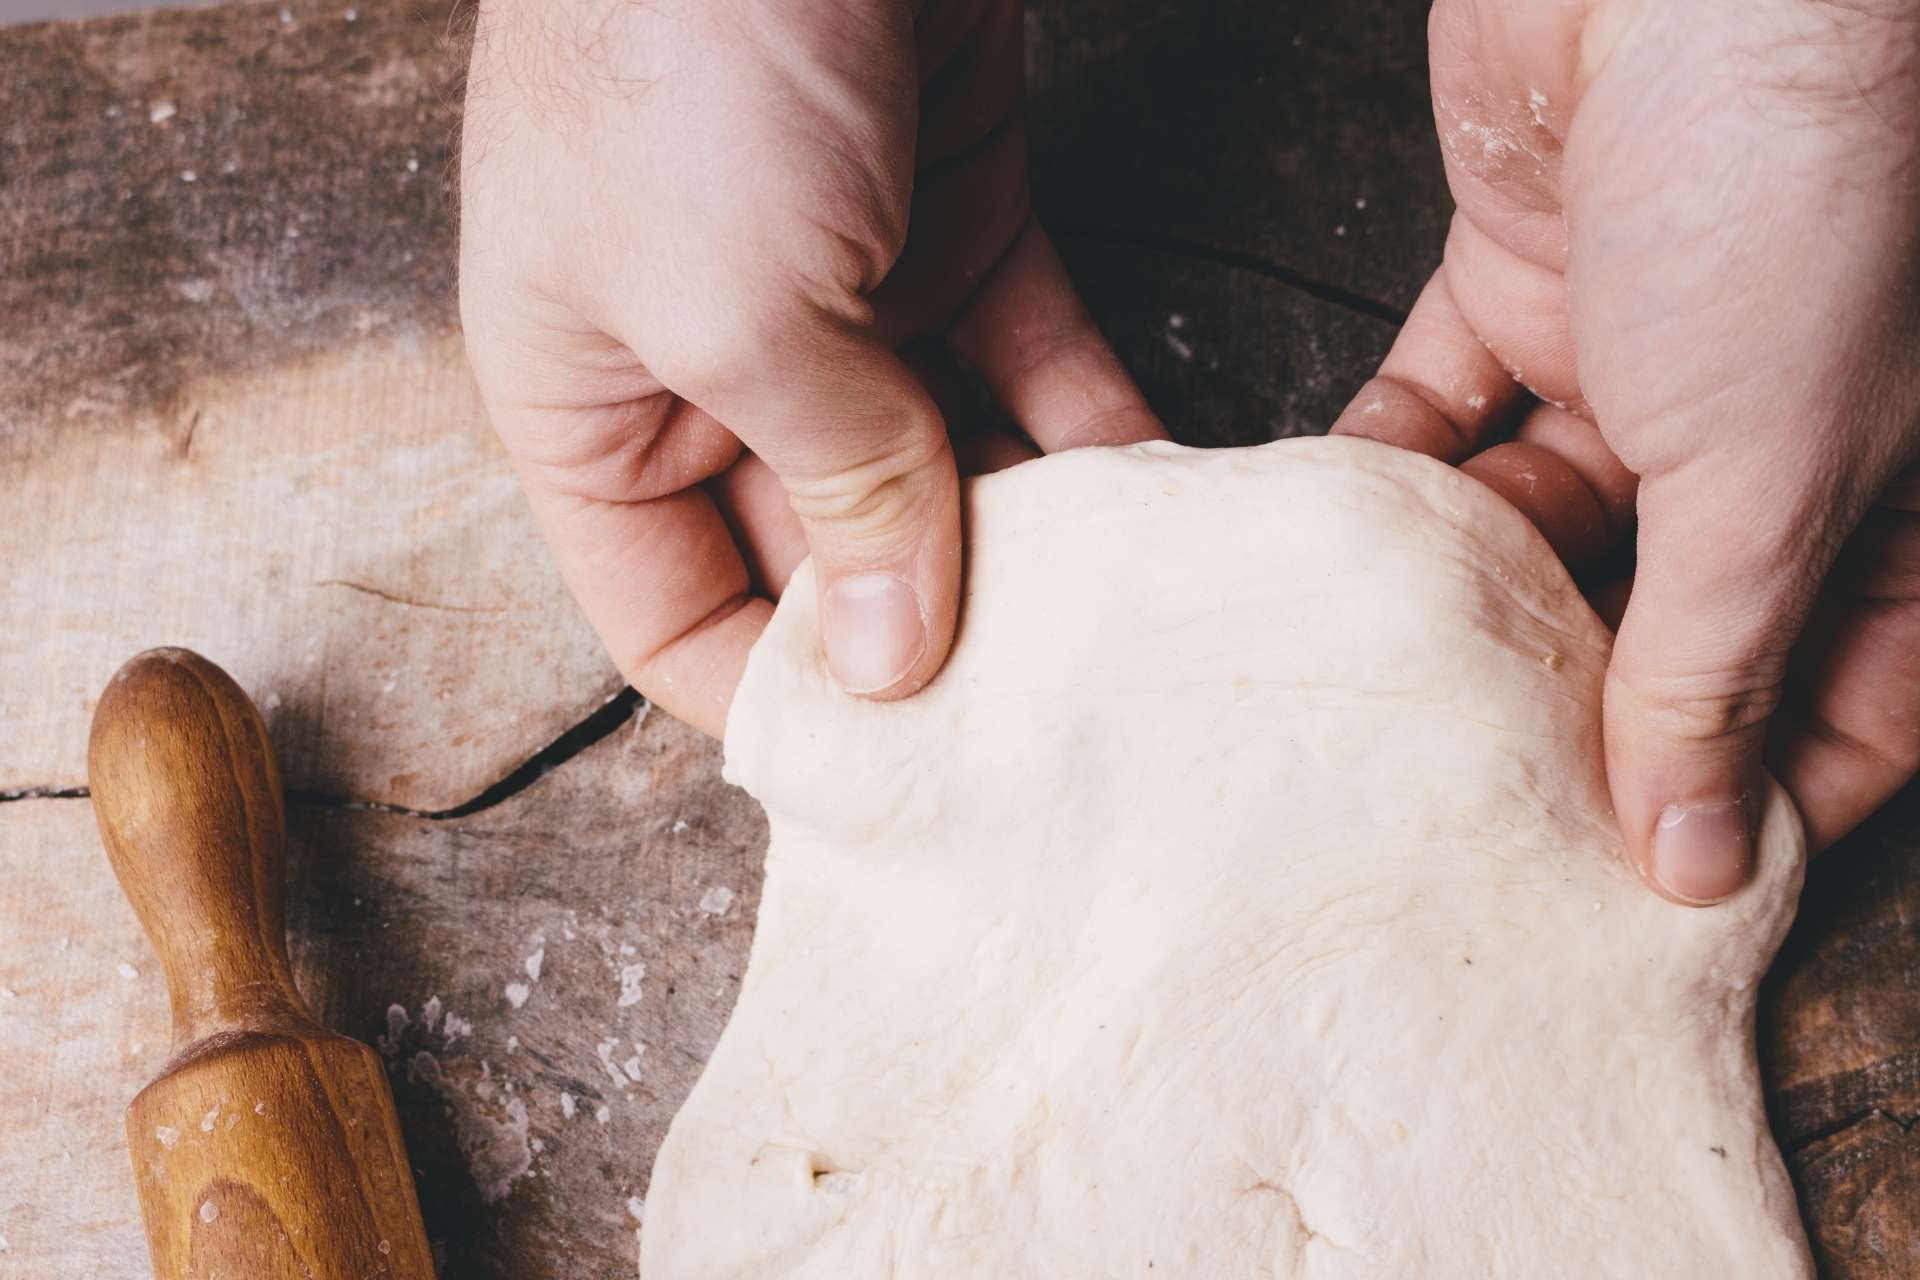 【パン作りのコツ】パンを作る際のコツやノウハウに関する記事一覧